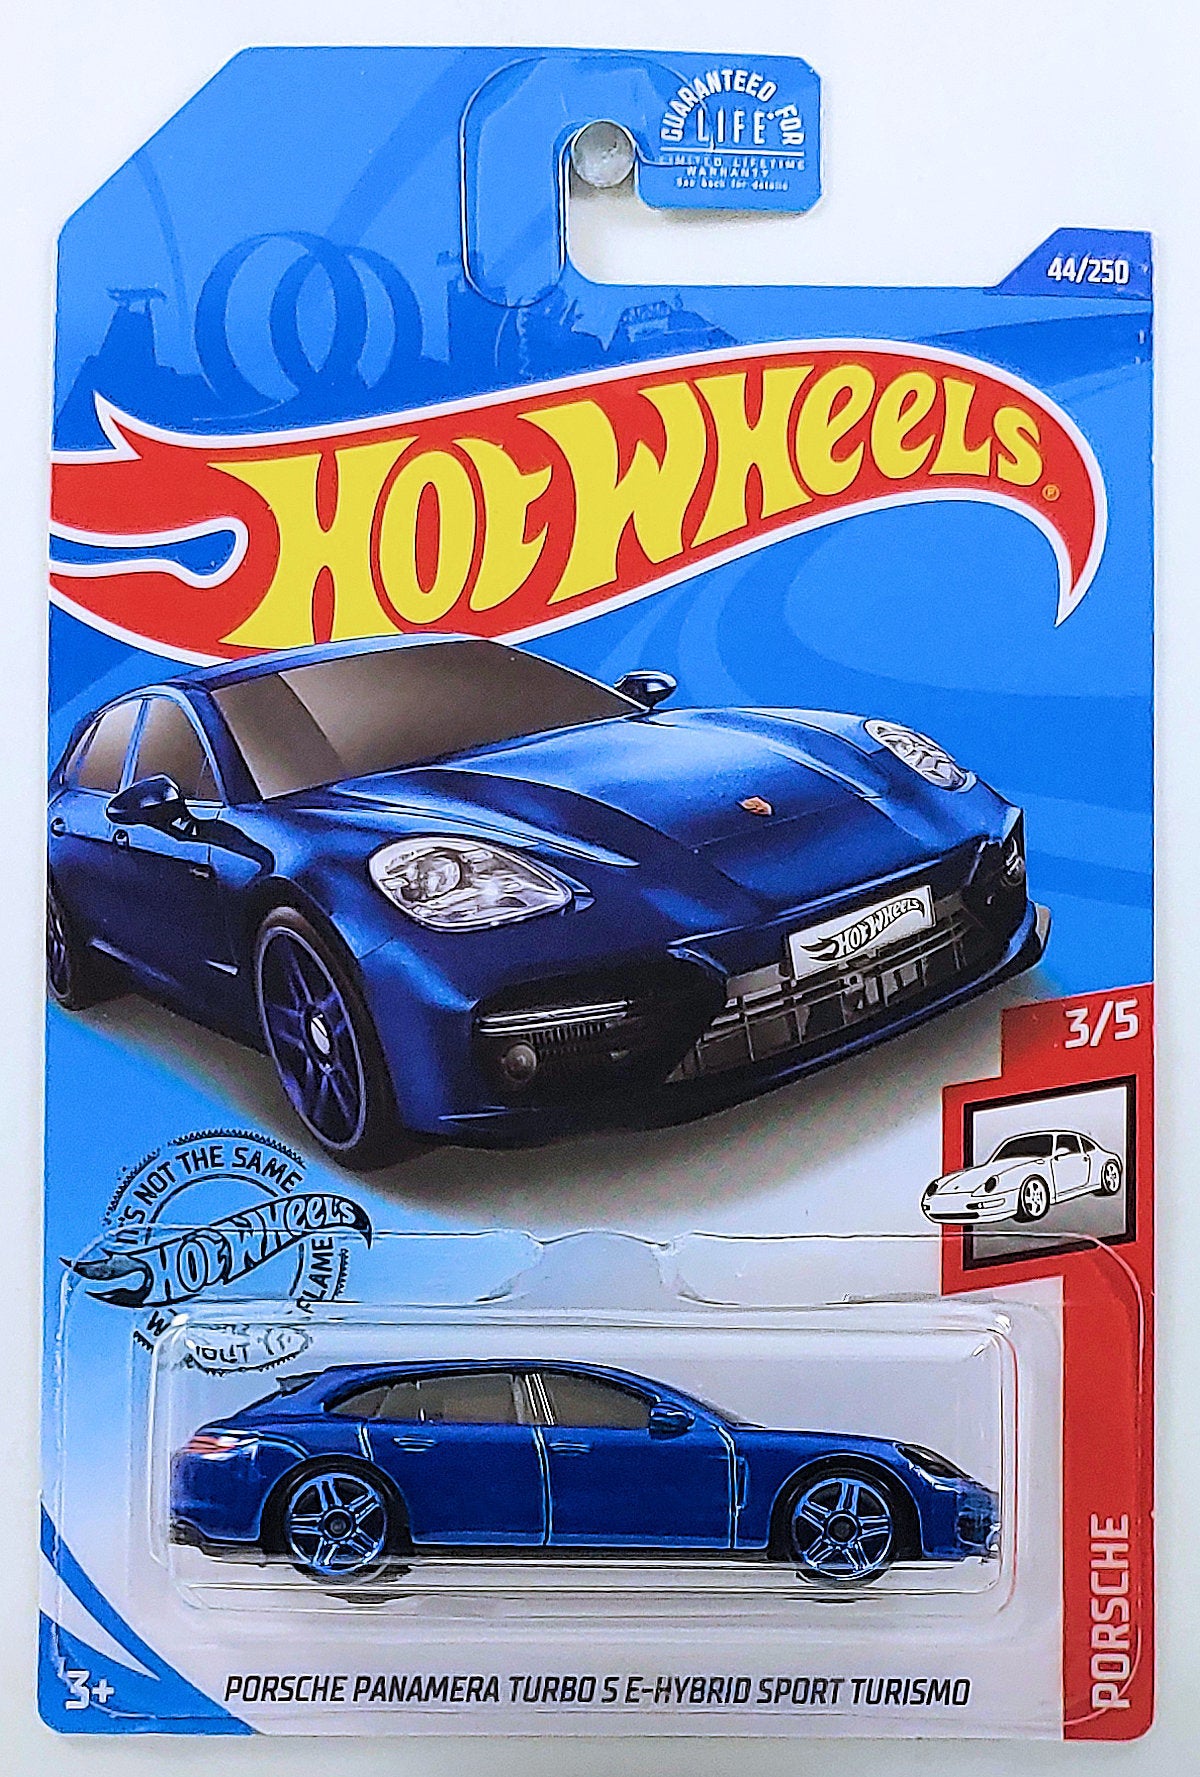 Hot Wheels 2020 - Collector # 044/250 - Porsche 3/5 - Porsche Panamera Turbo 5 E-Hybrid Sport Turismo - Blue